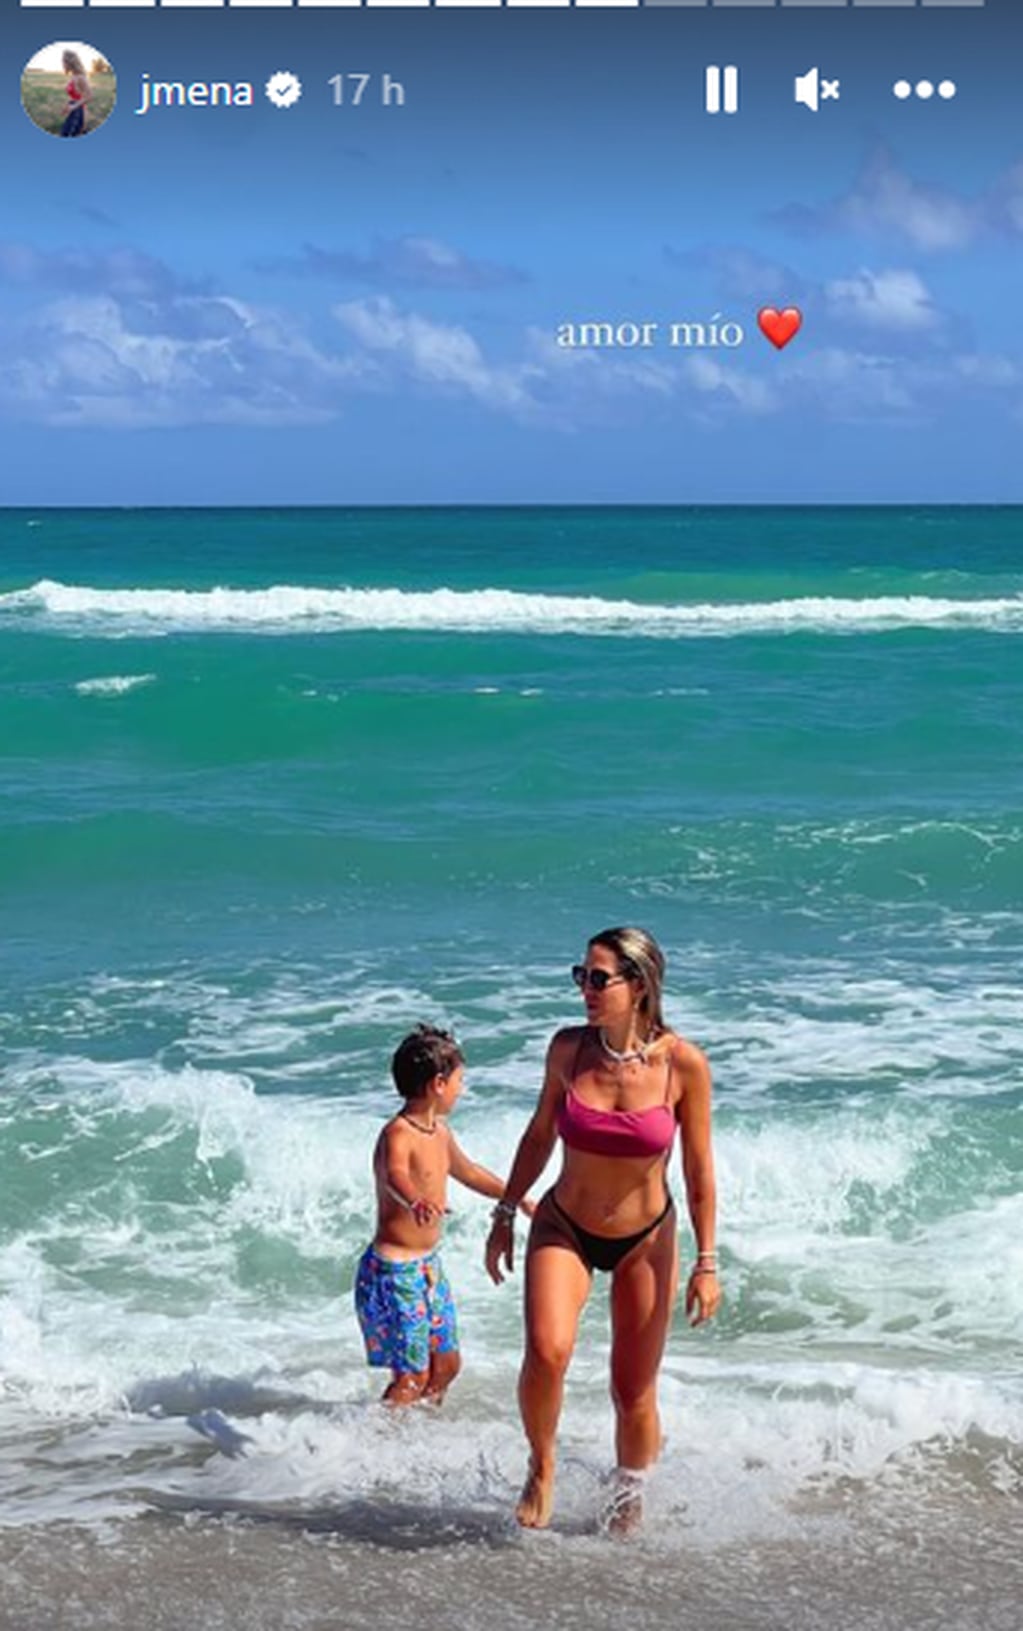 Jimena Barón posó de espaldas y enamoró a todos en Instagram